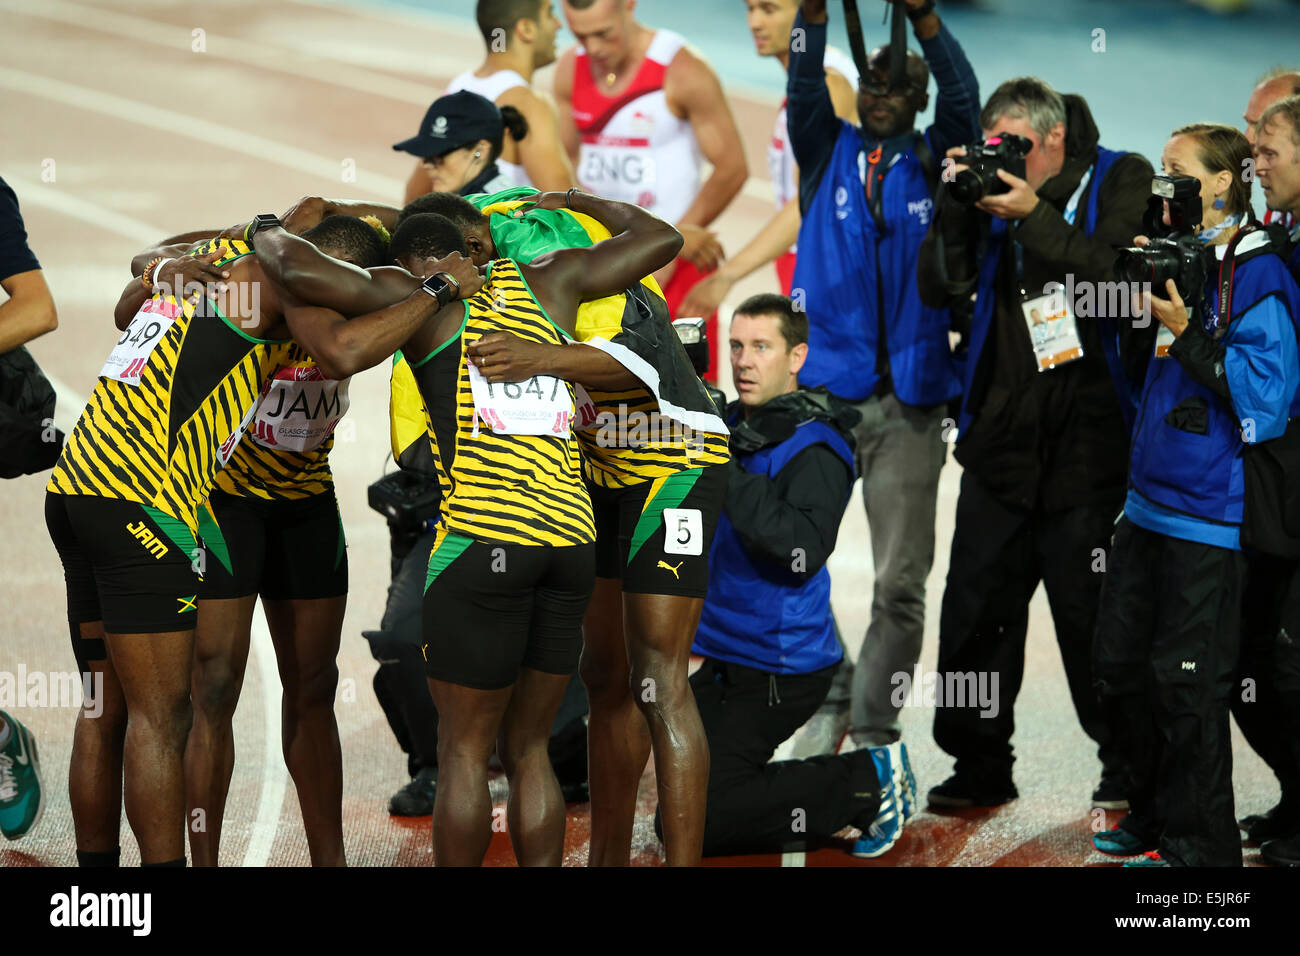 Glasgow Hampden Park 2 août 2014. Jeux du Commonwealth Men's 4x100 final. Usain Bolt met la baguette pour la Jamaïque en un temps record de nouveaux jeux 37,58. L'Angleterre a terminé deuxième en 38,02. L'équipe jamaïcaine - Jason Livermore ; Kemar Bailey-Cole ; Nickel Ashmeade et Usain Bolt. Une équipe se serrent pour les caméras. Banque D'Images